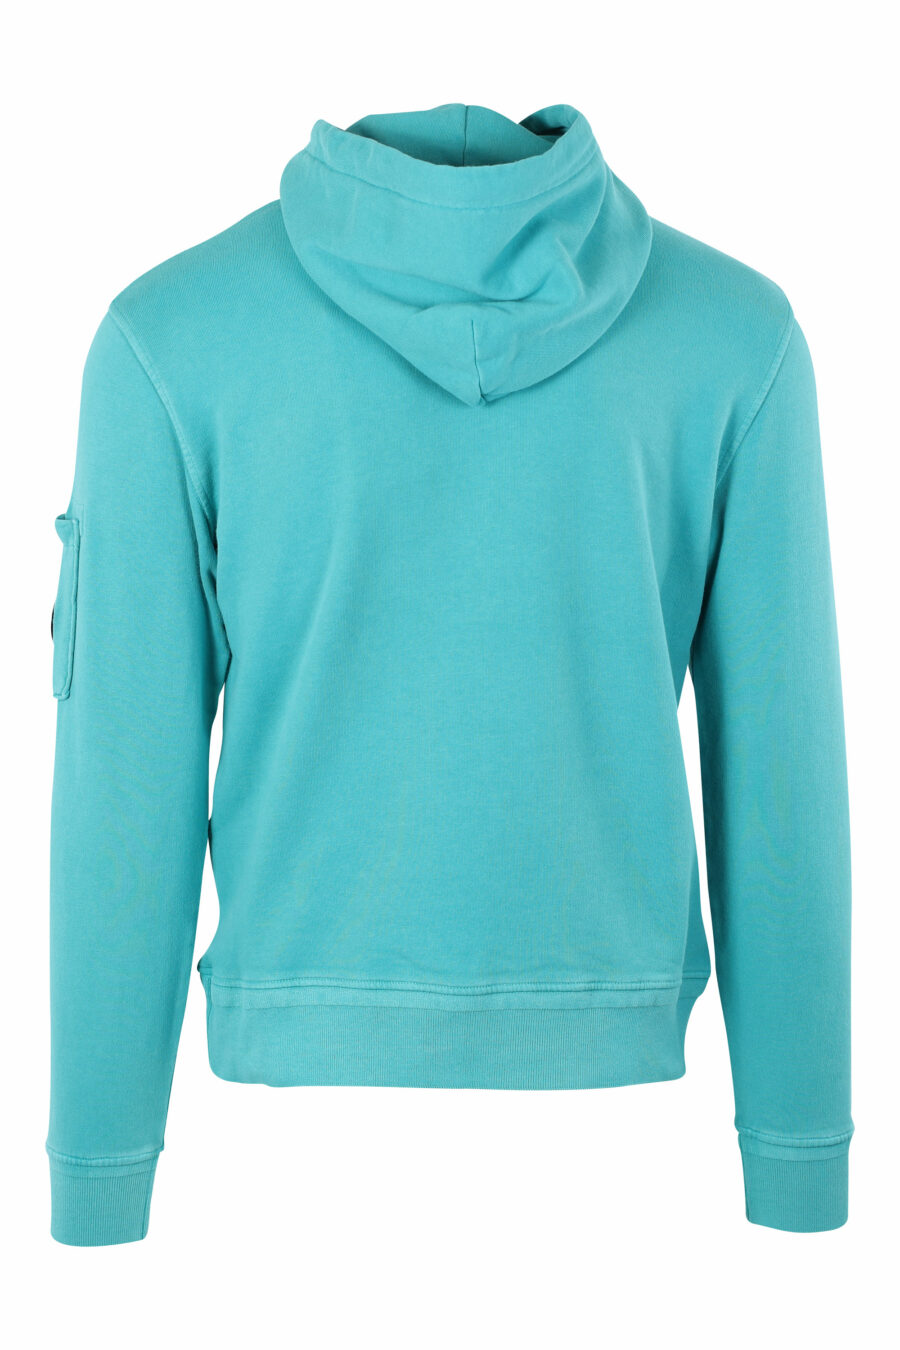 Türkisfarbenes Sweatshirt mit Kapuze und rundem Mini-Logo an der Seite - IMG 9610